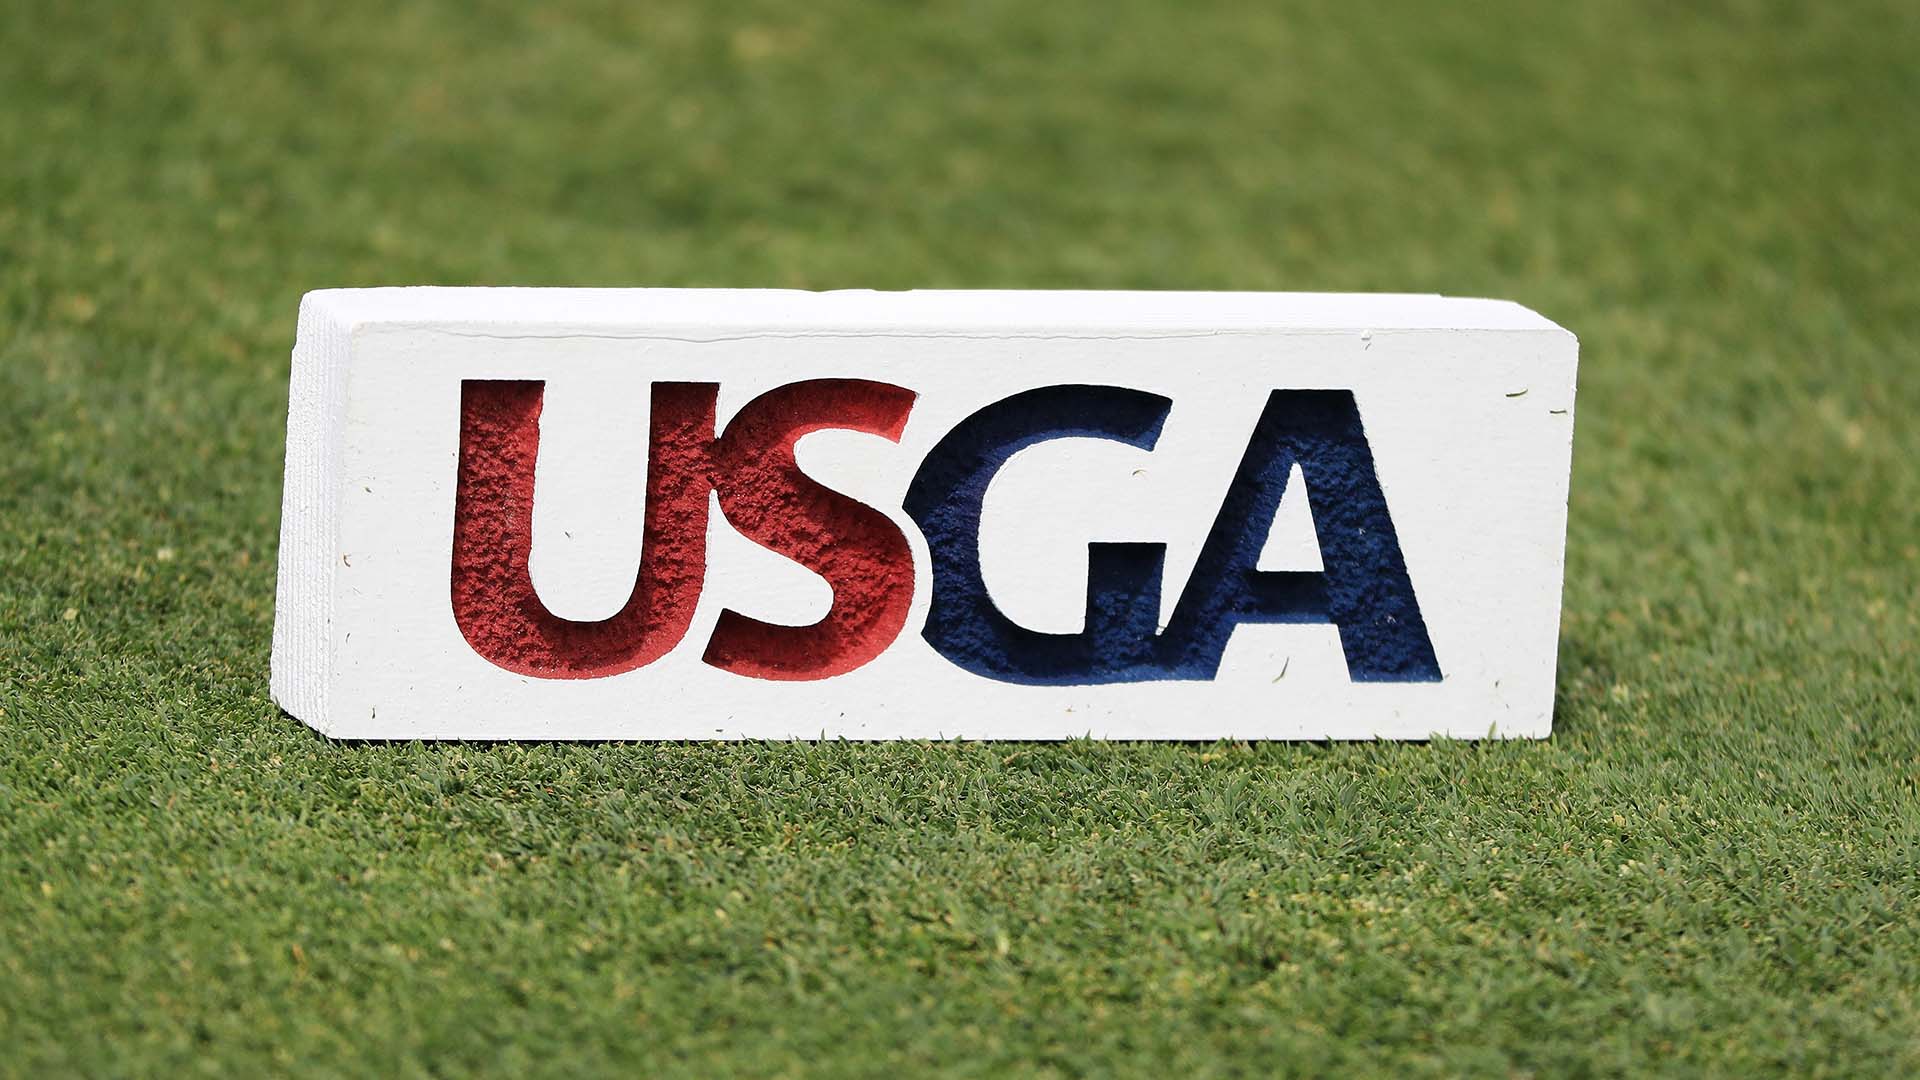 USGA và R&A lên kế hoạch cập nhật luật golf về tình trạng nghiệp dư